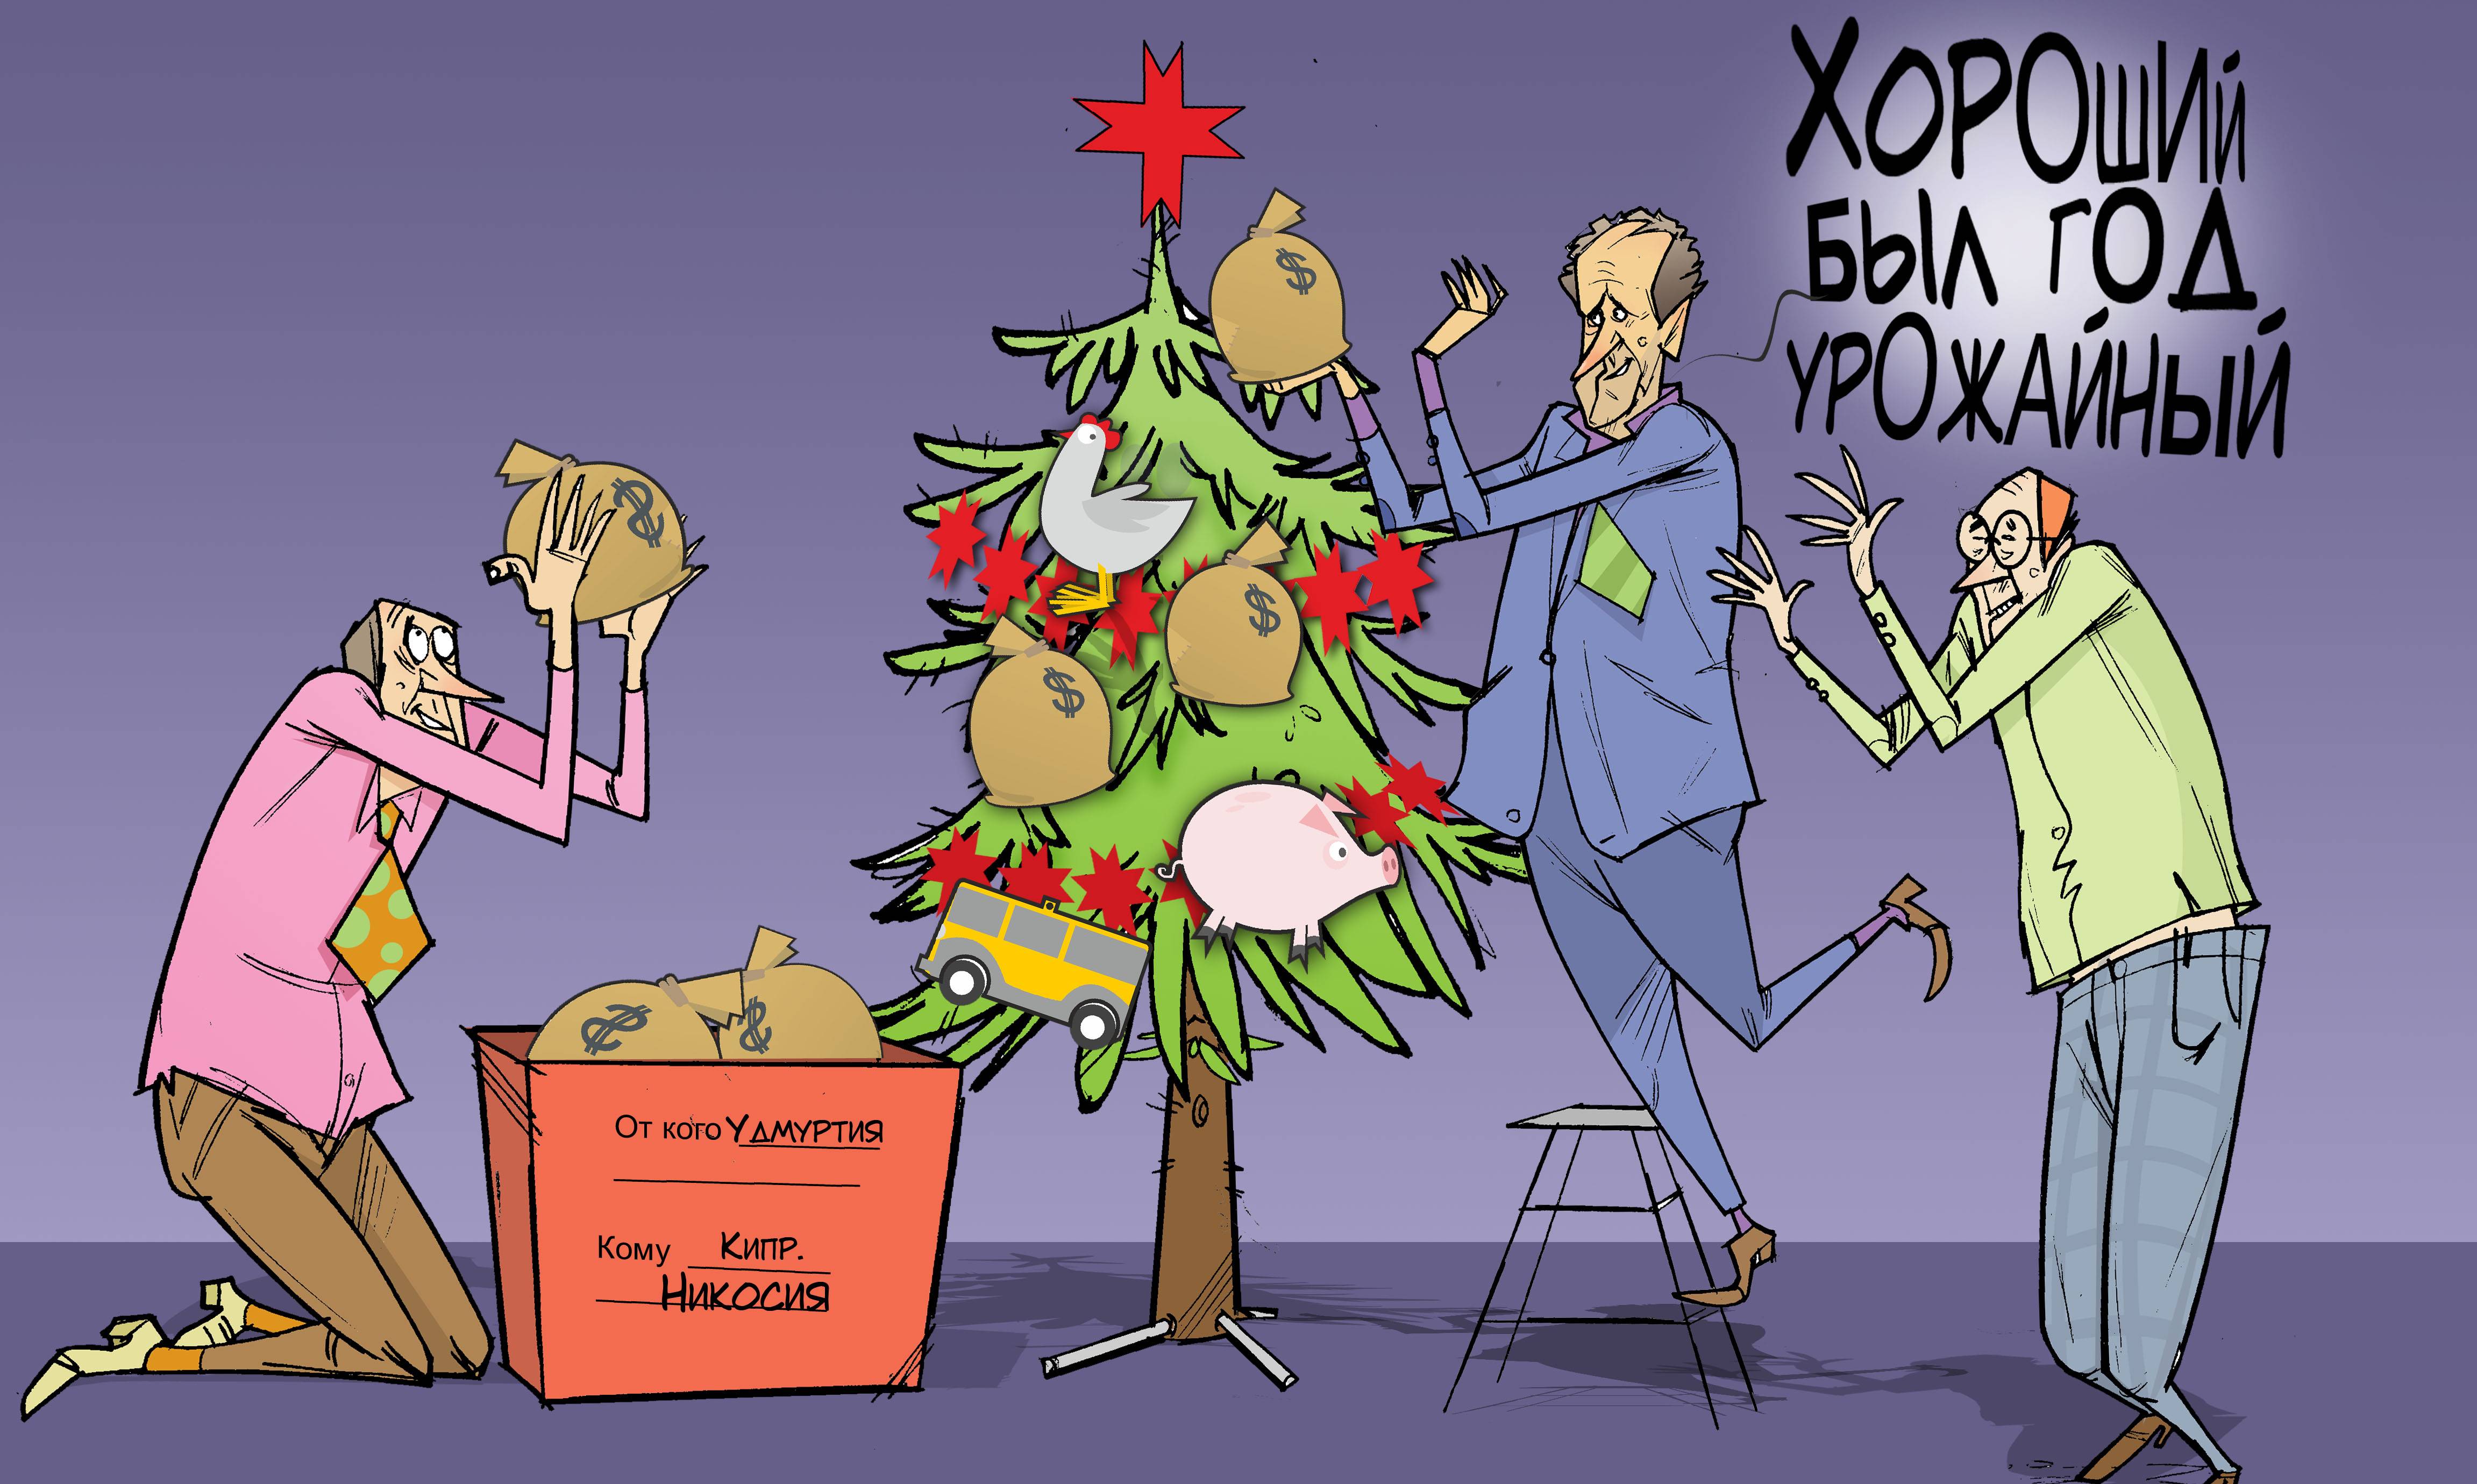 Урожайный год. #ПрезидентУР #Волков #Удмуртия #Кипр © Газета "День" 2013